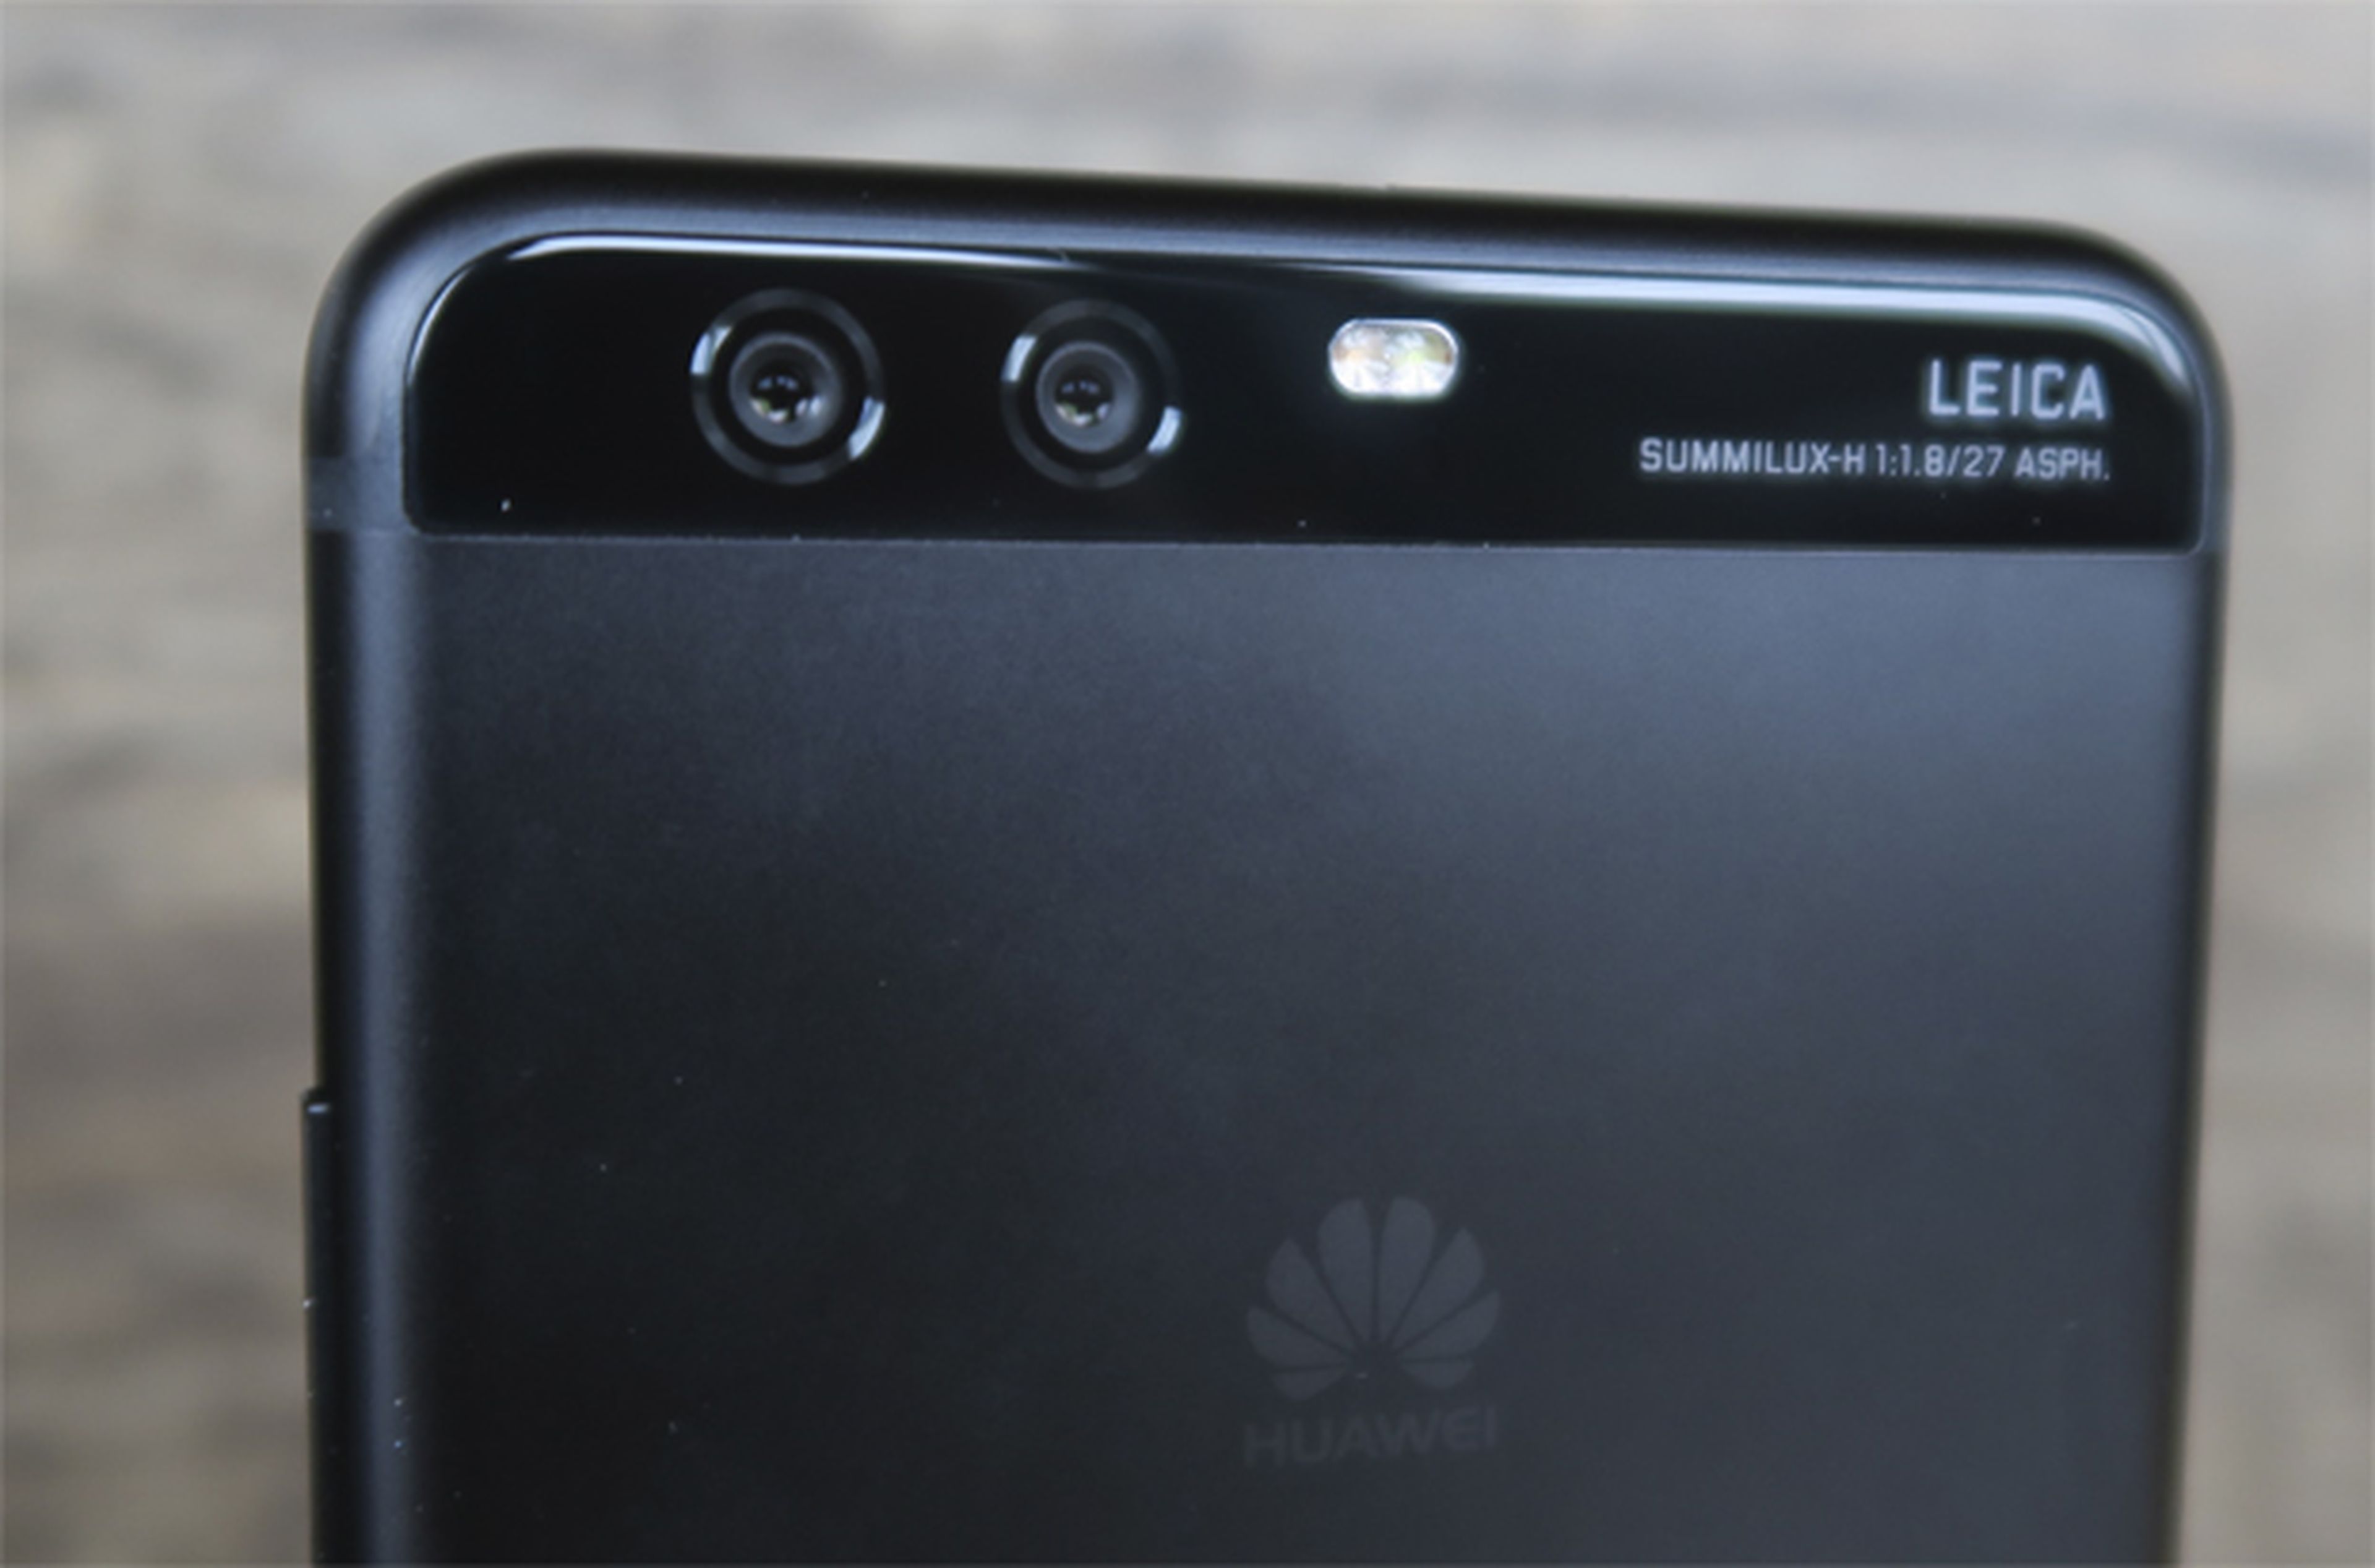 El Huawei P10 Plus tiene una doble cámara, y os contamos nuestras sensaciones con ella en esta review